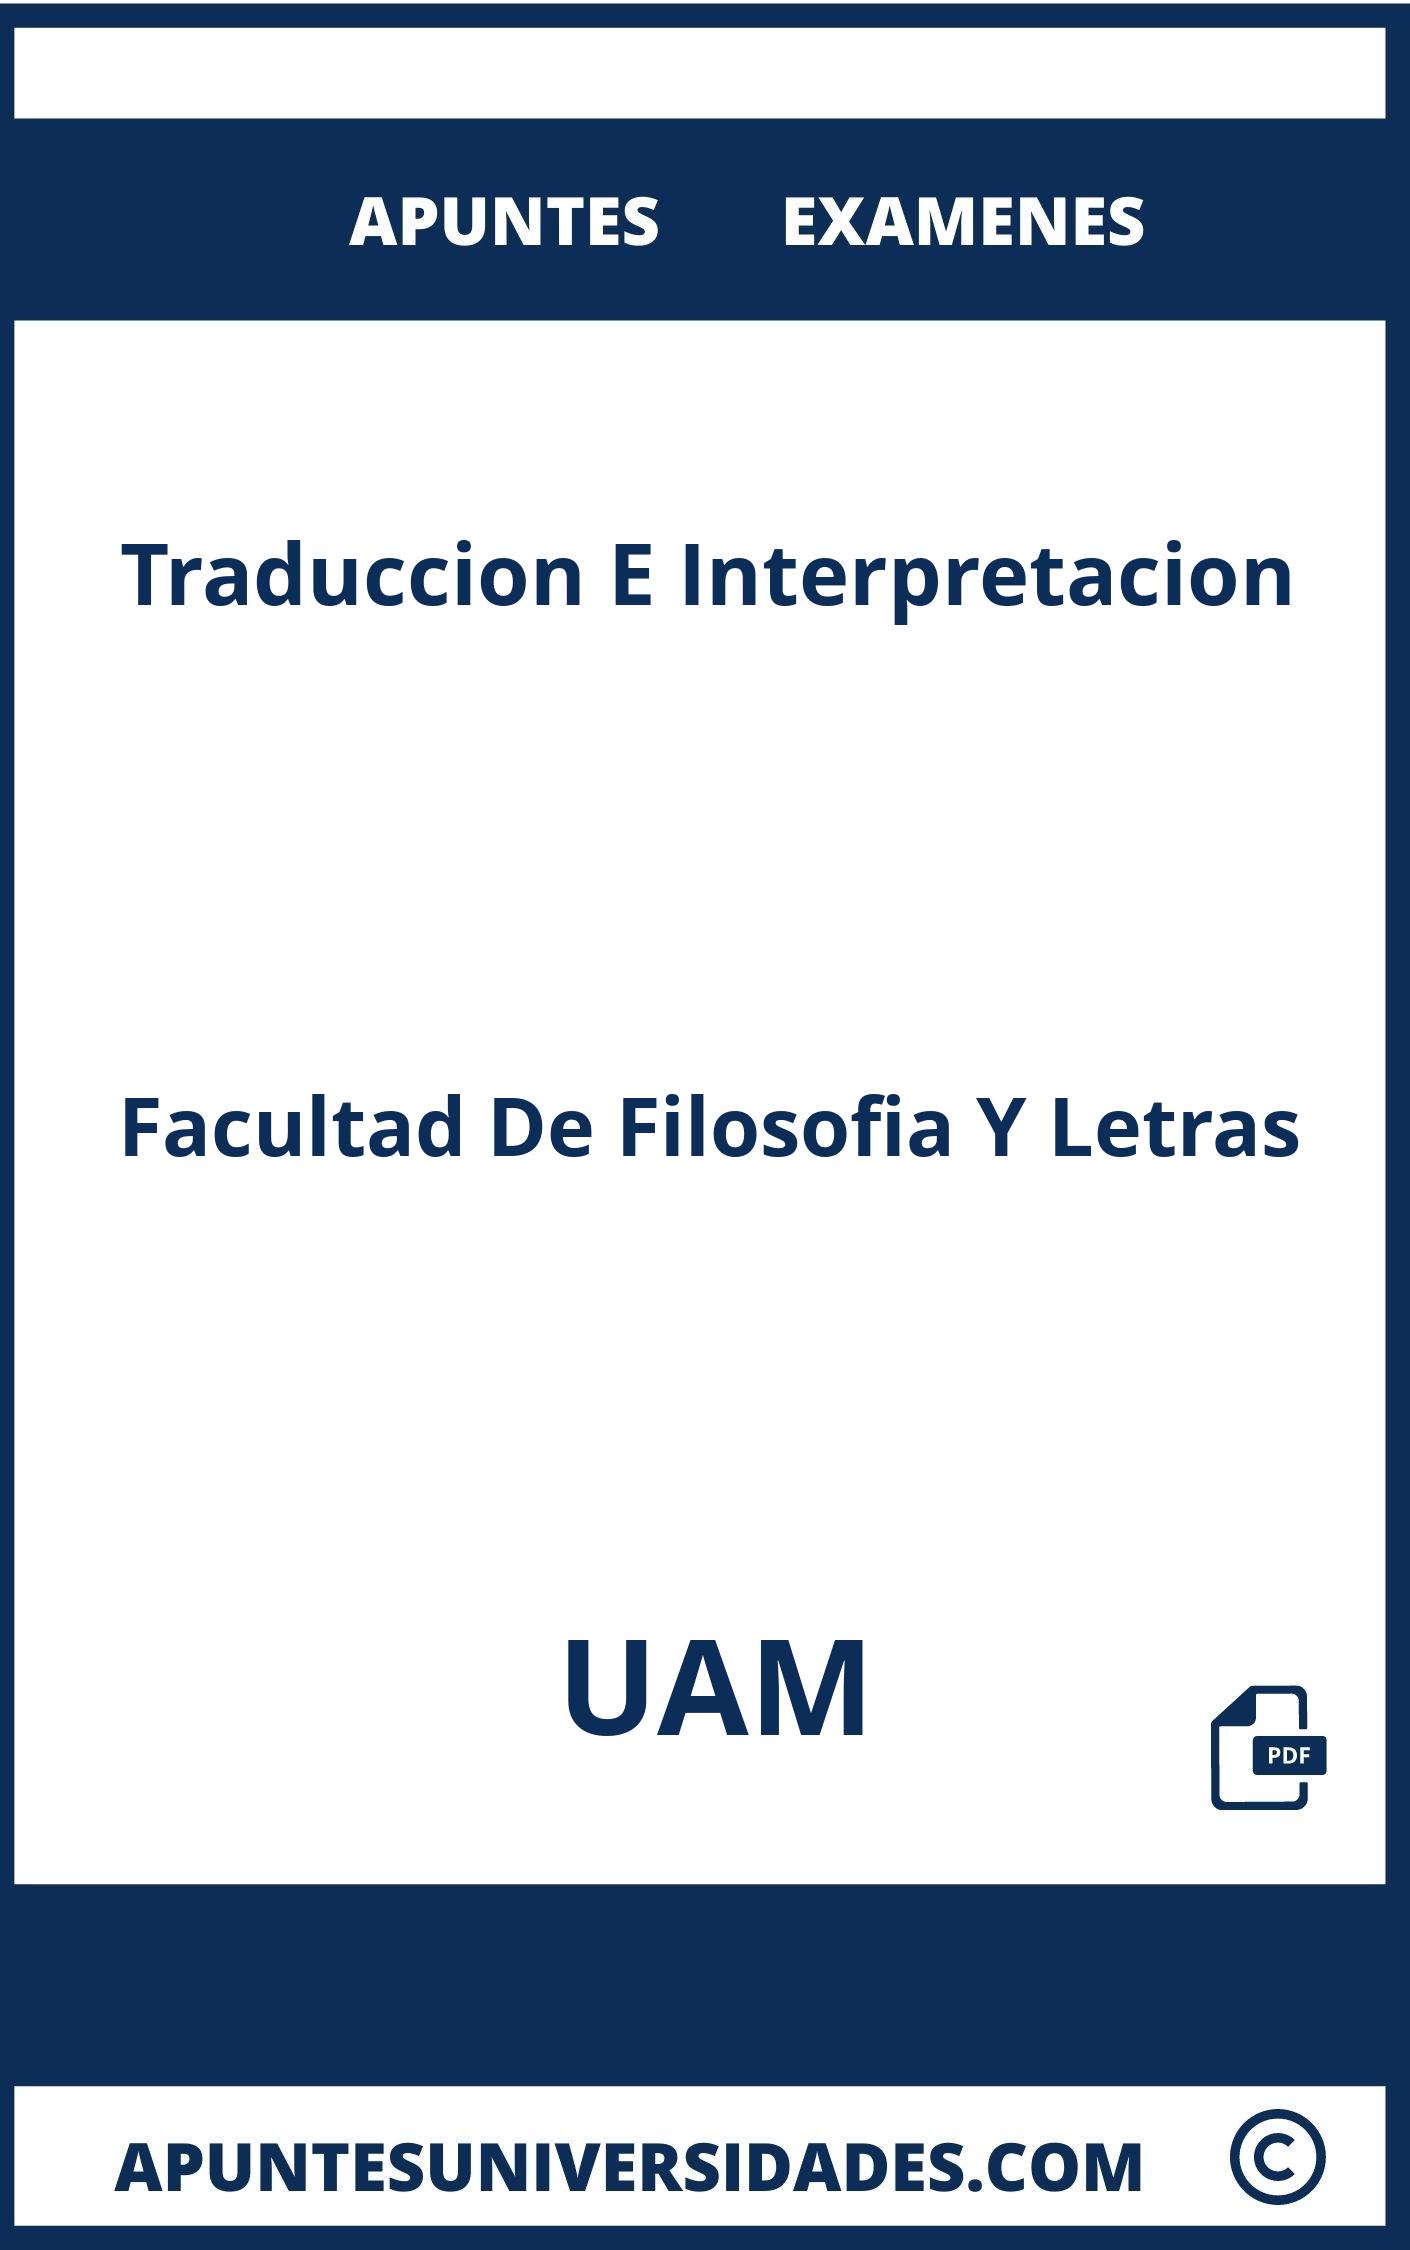 Traduccion E Interpretacion UAM Examenes Apuntes